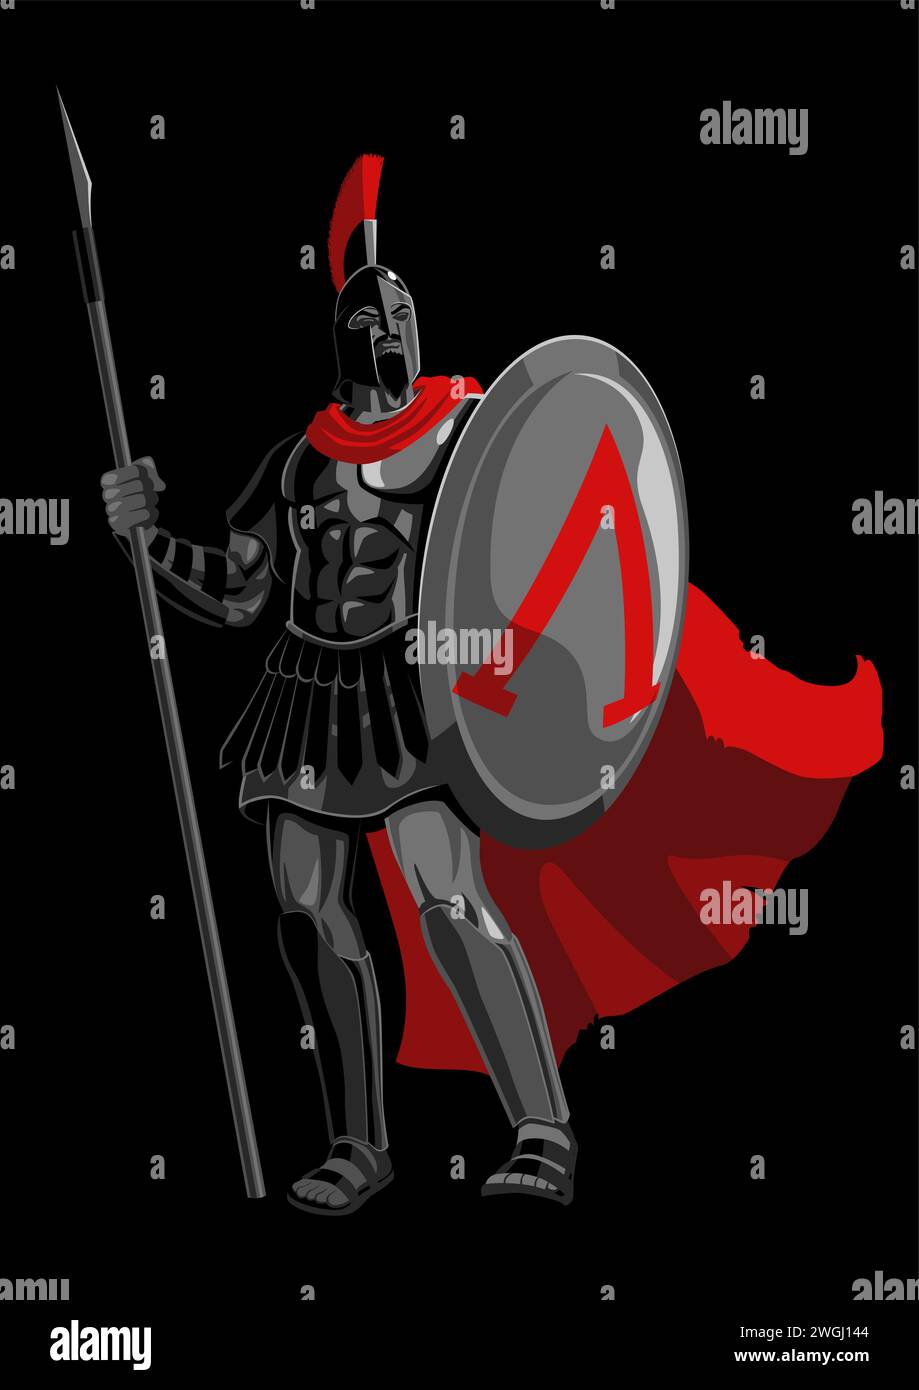 Illustration vectorielle plate simple d'un ancien guerrier spartiate portant une armure et un manteau rouge Illustration de Vecteur